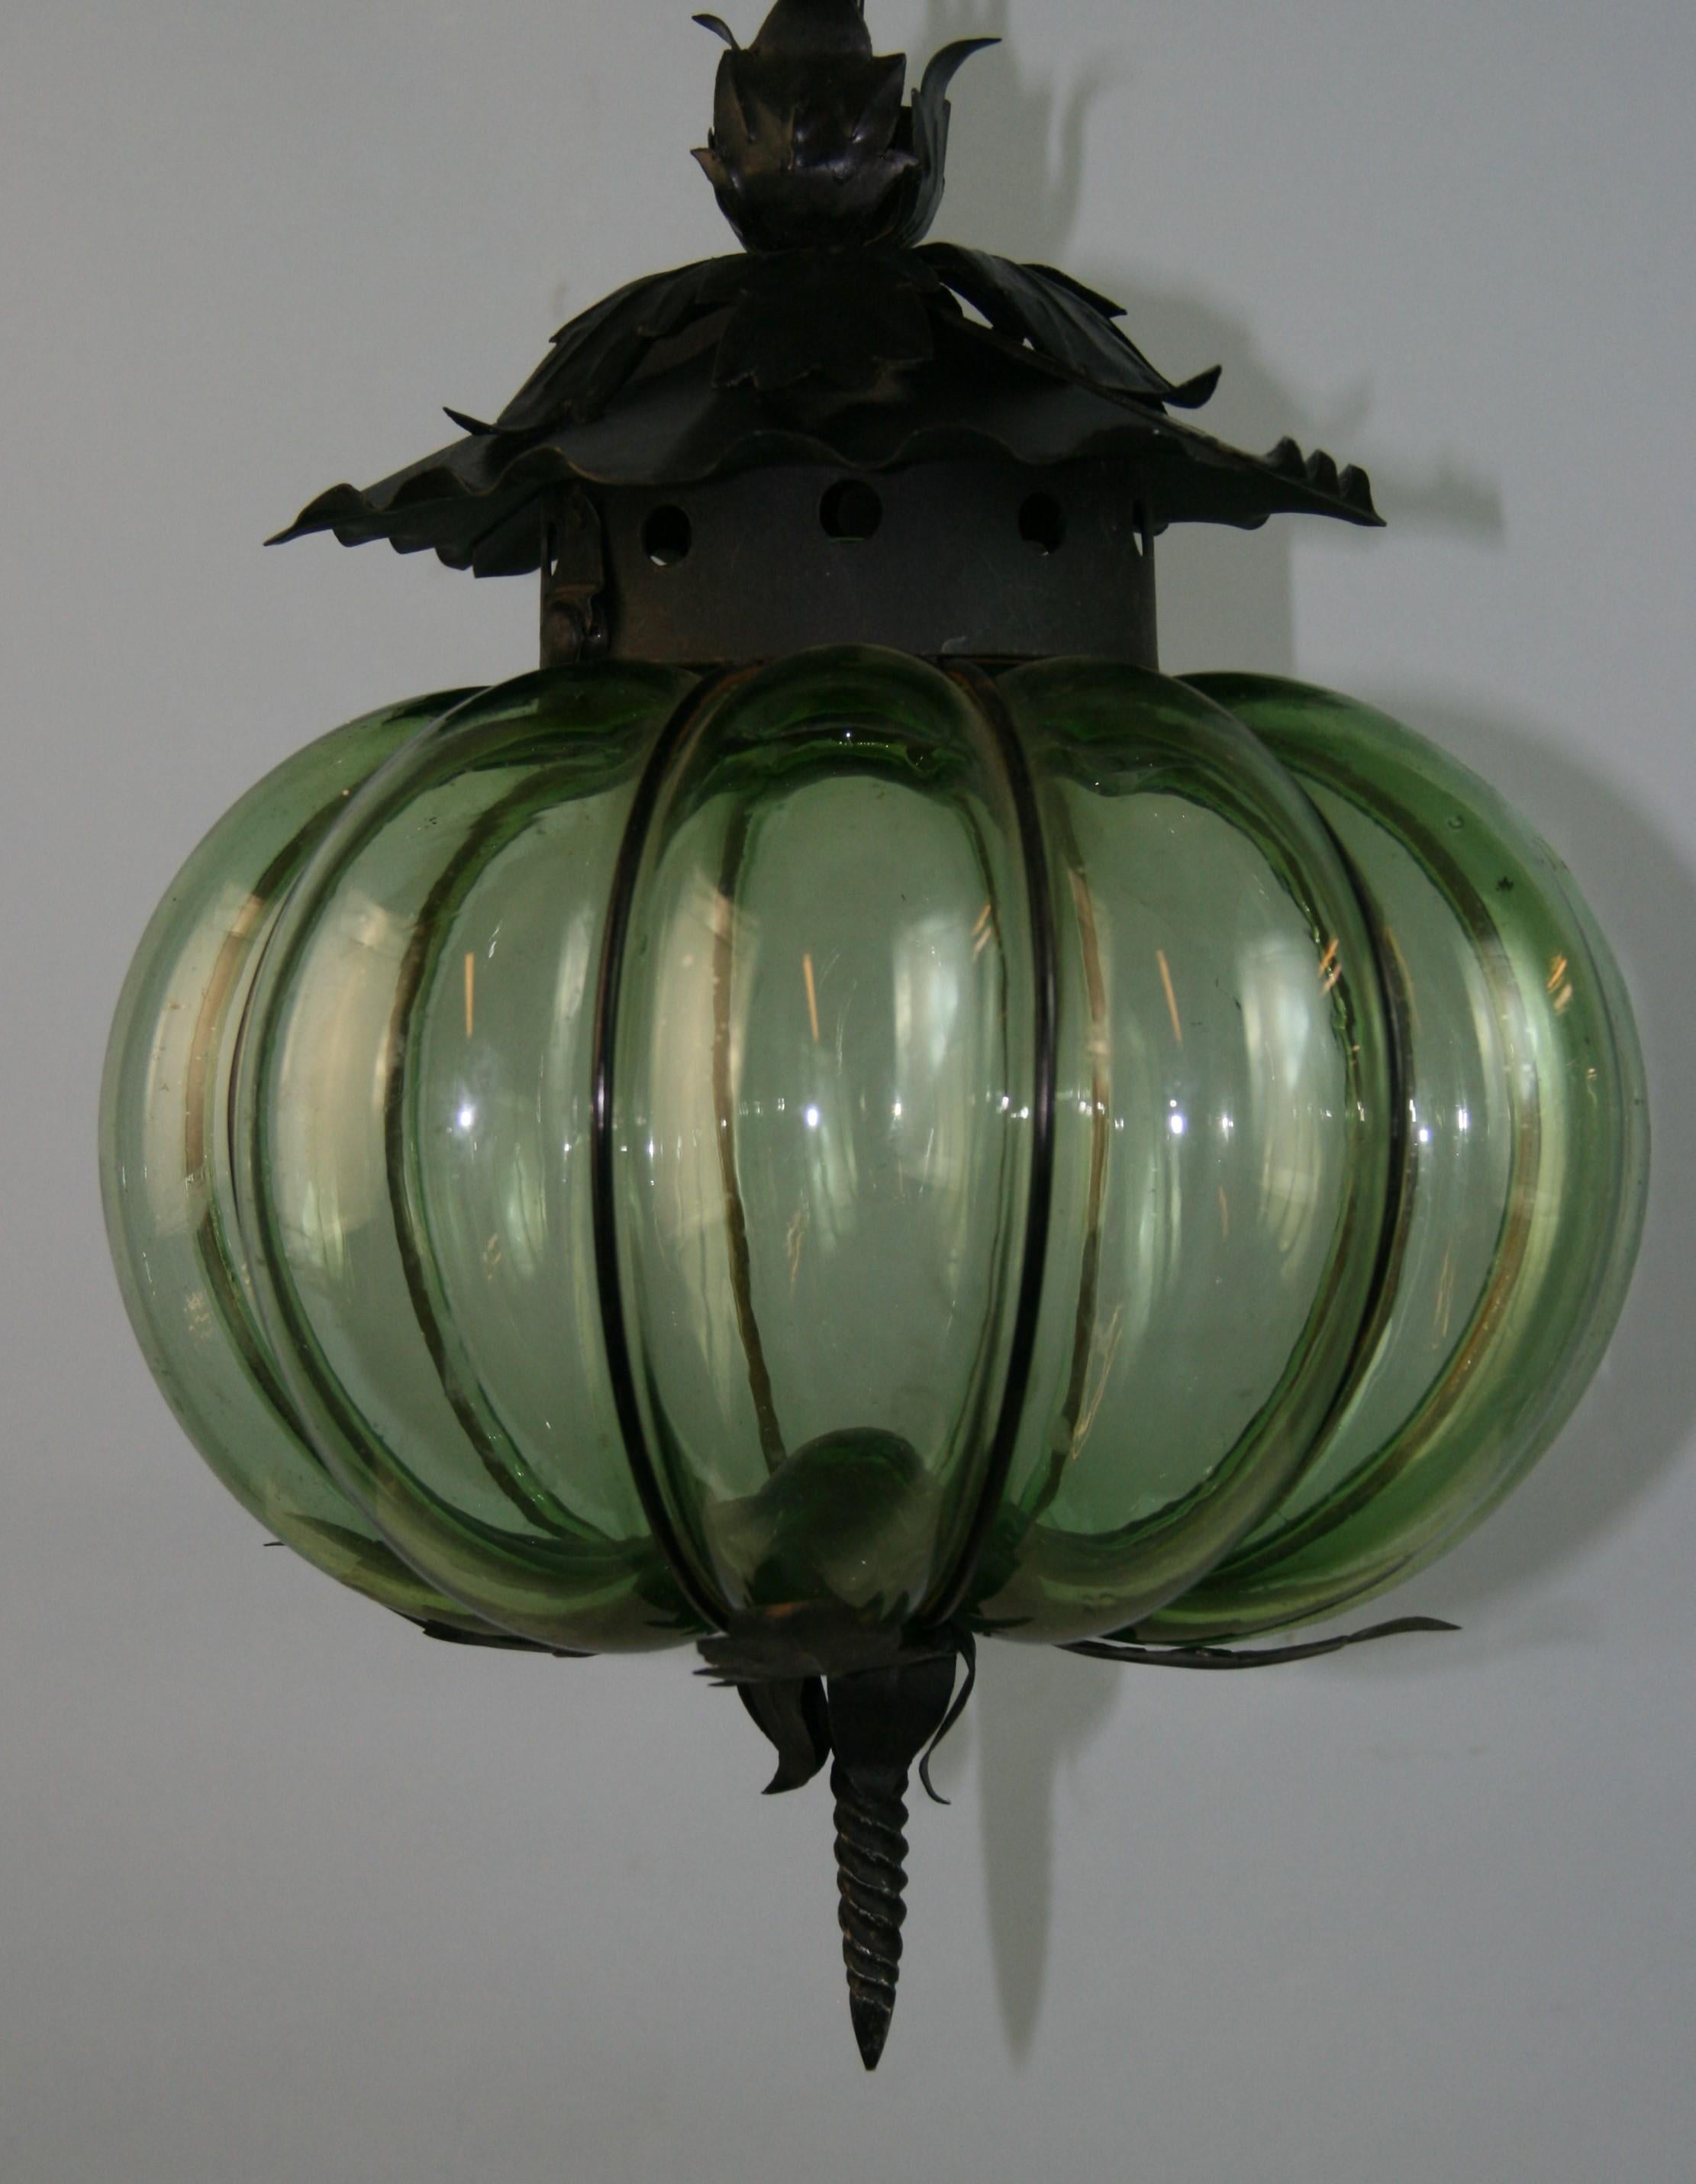 Verre vert de Murano soufflé dans un cadre en métal
Rewired fonctionne avec une ampoule de 60 watts de type Edison.
Fourni avec une chaîne de 3 pieds et un baldaquin.